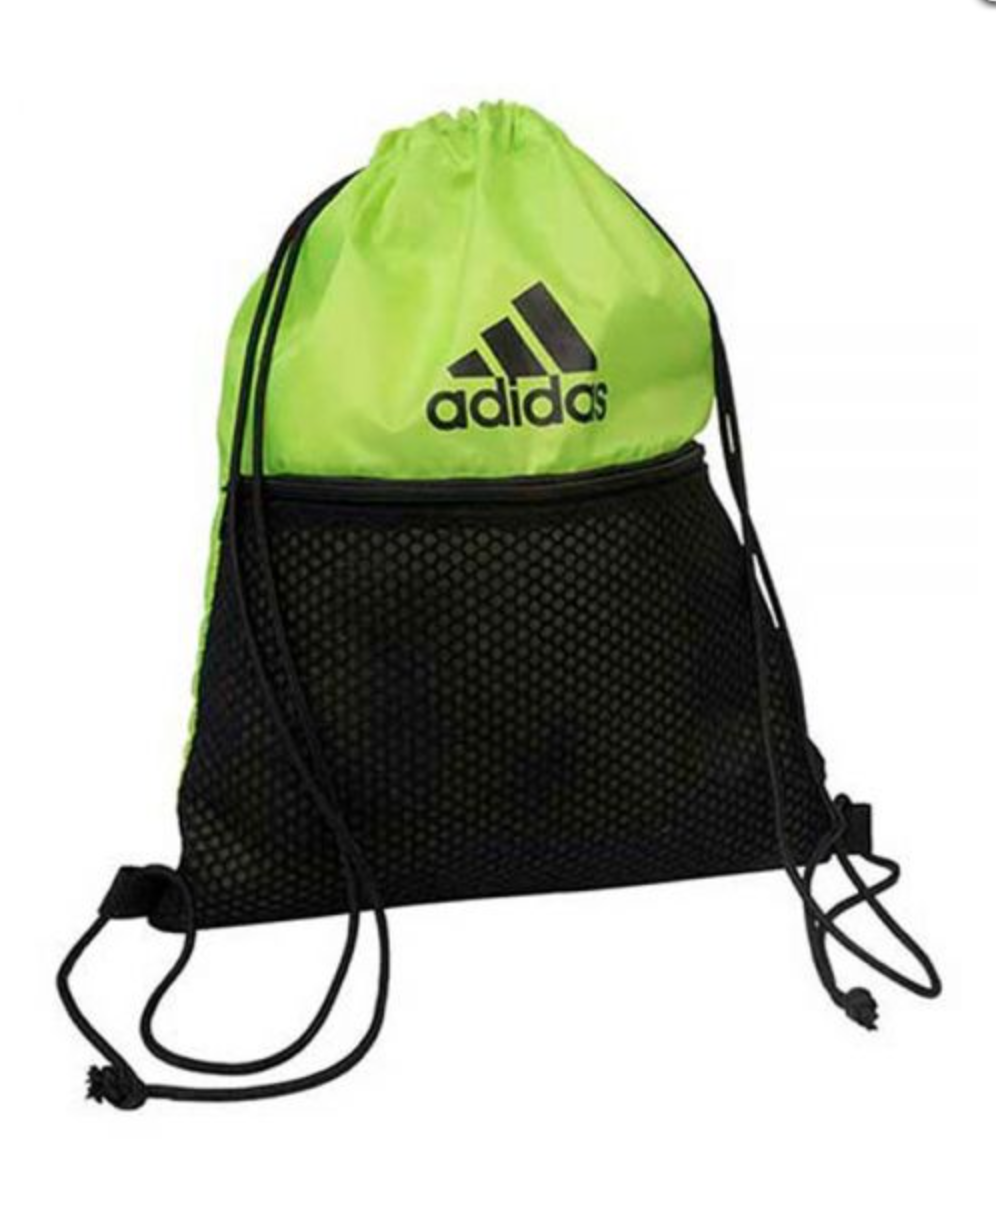 Adidas Protour Lime Bag